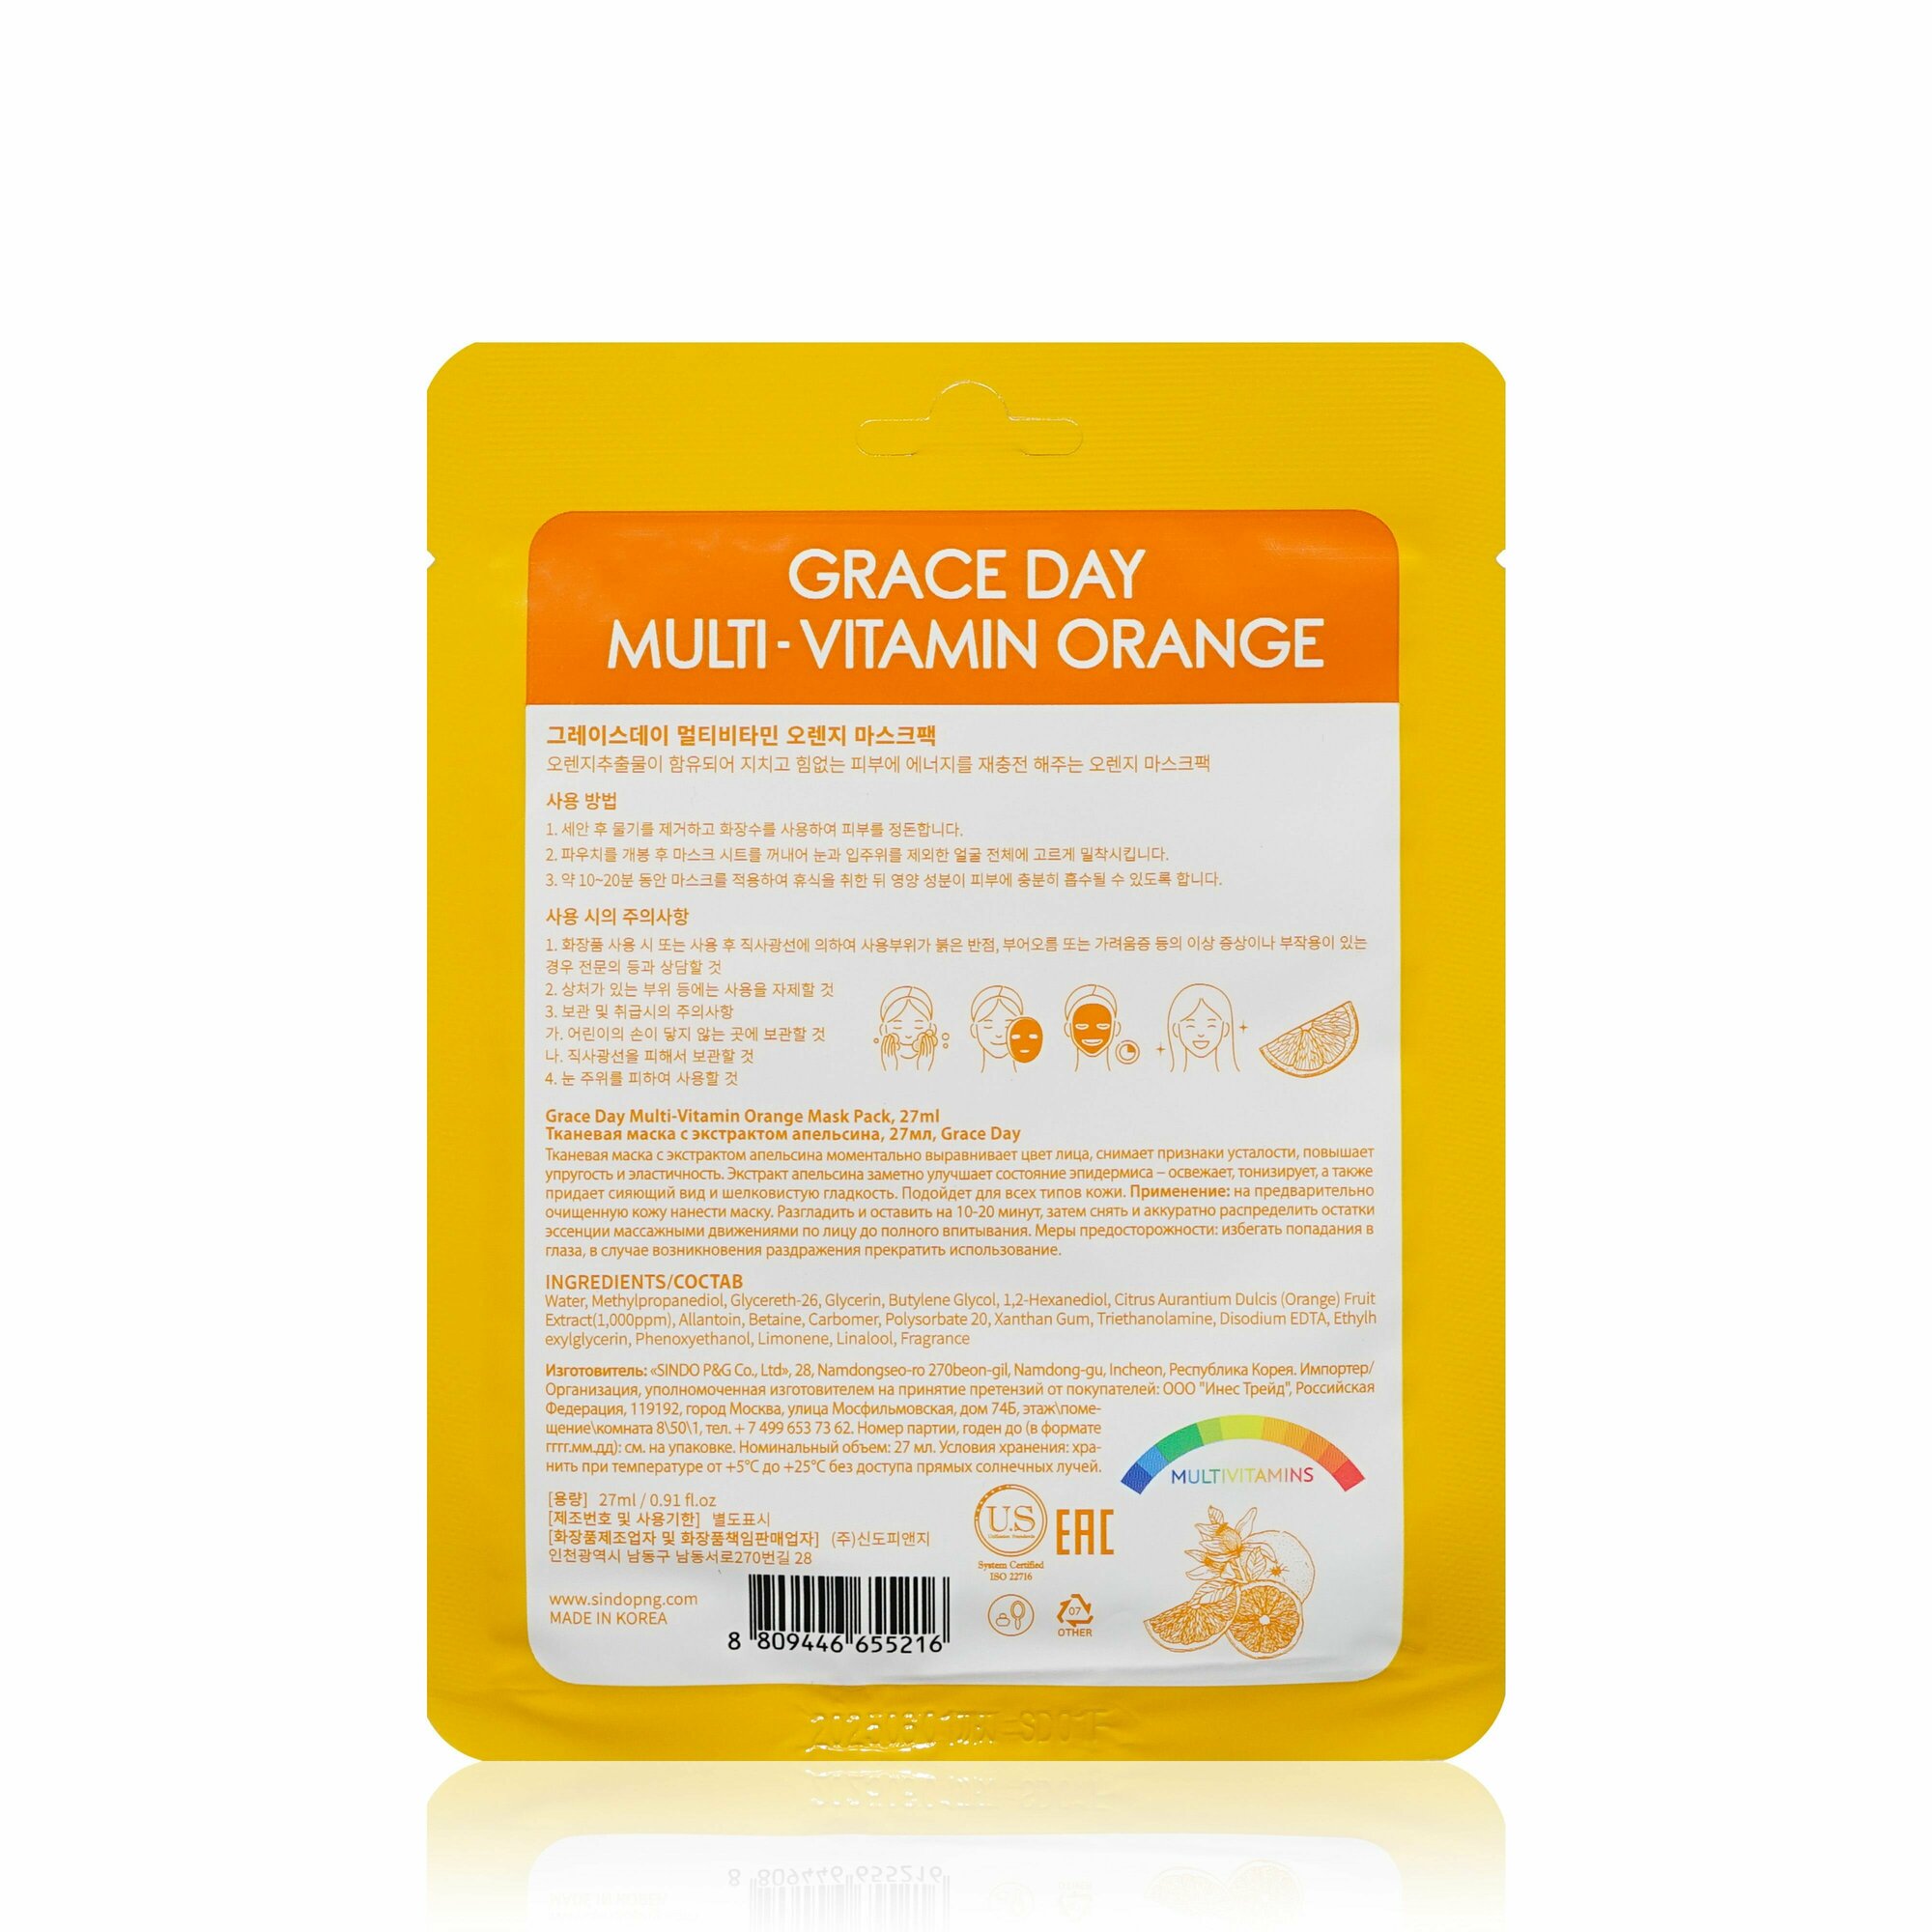 Маска для лица GRACE DAY MULTI-VITAMIN с экстрактом апельсина (для сияния кожи) 27 мл